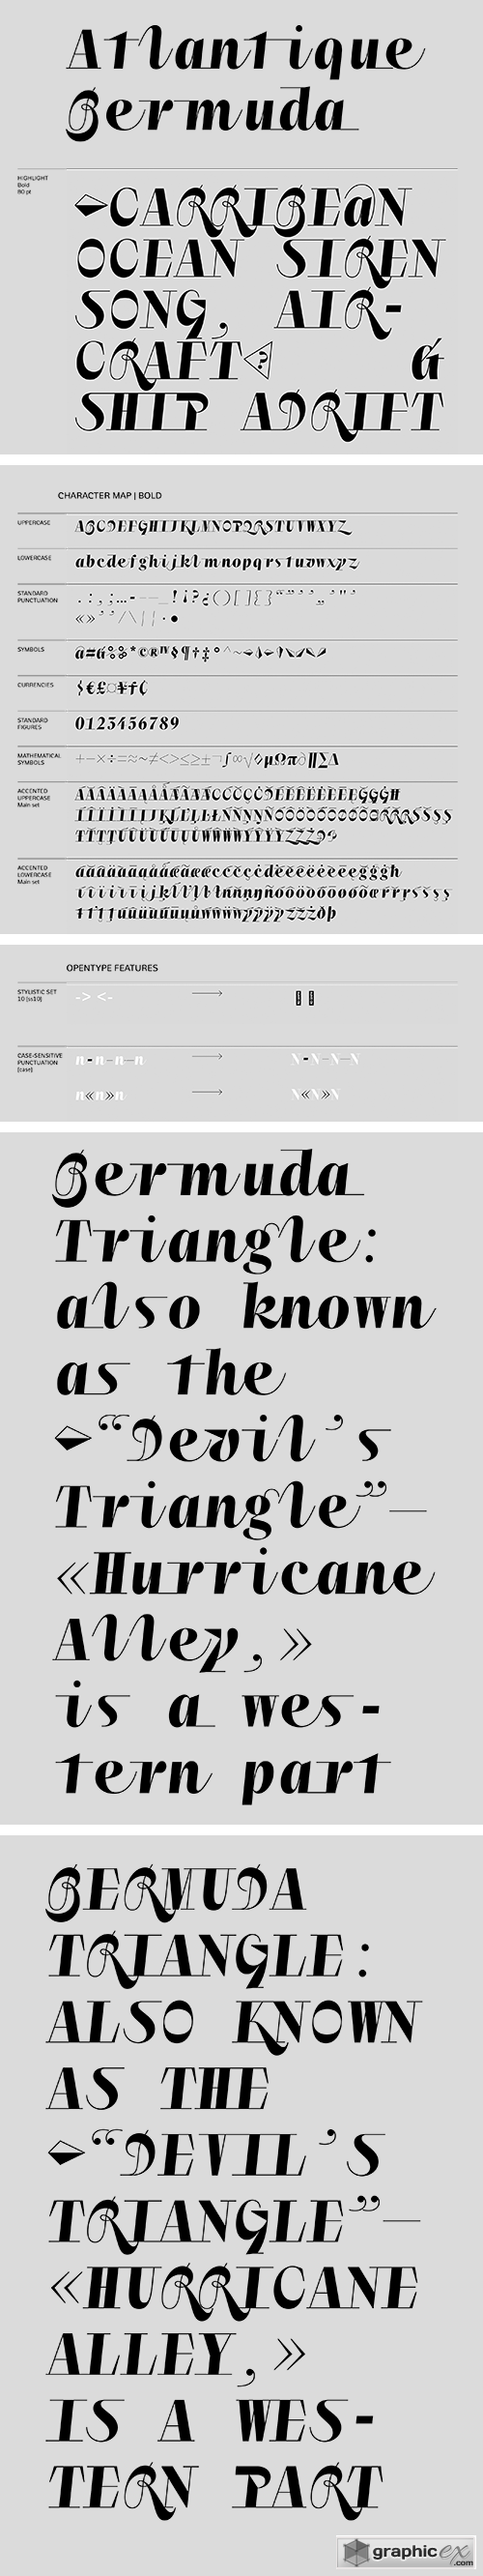  Atlantique Bermuda Display Typeface 